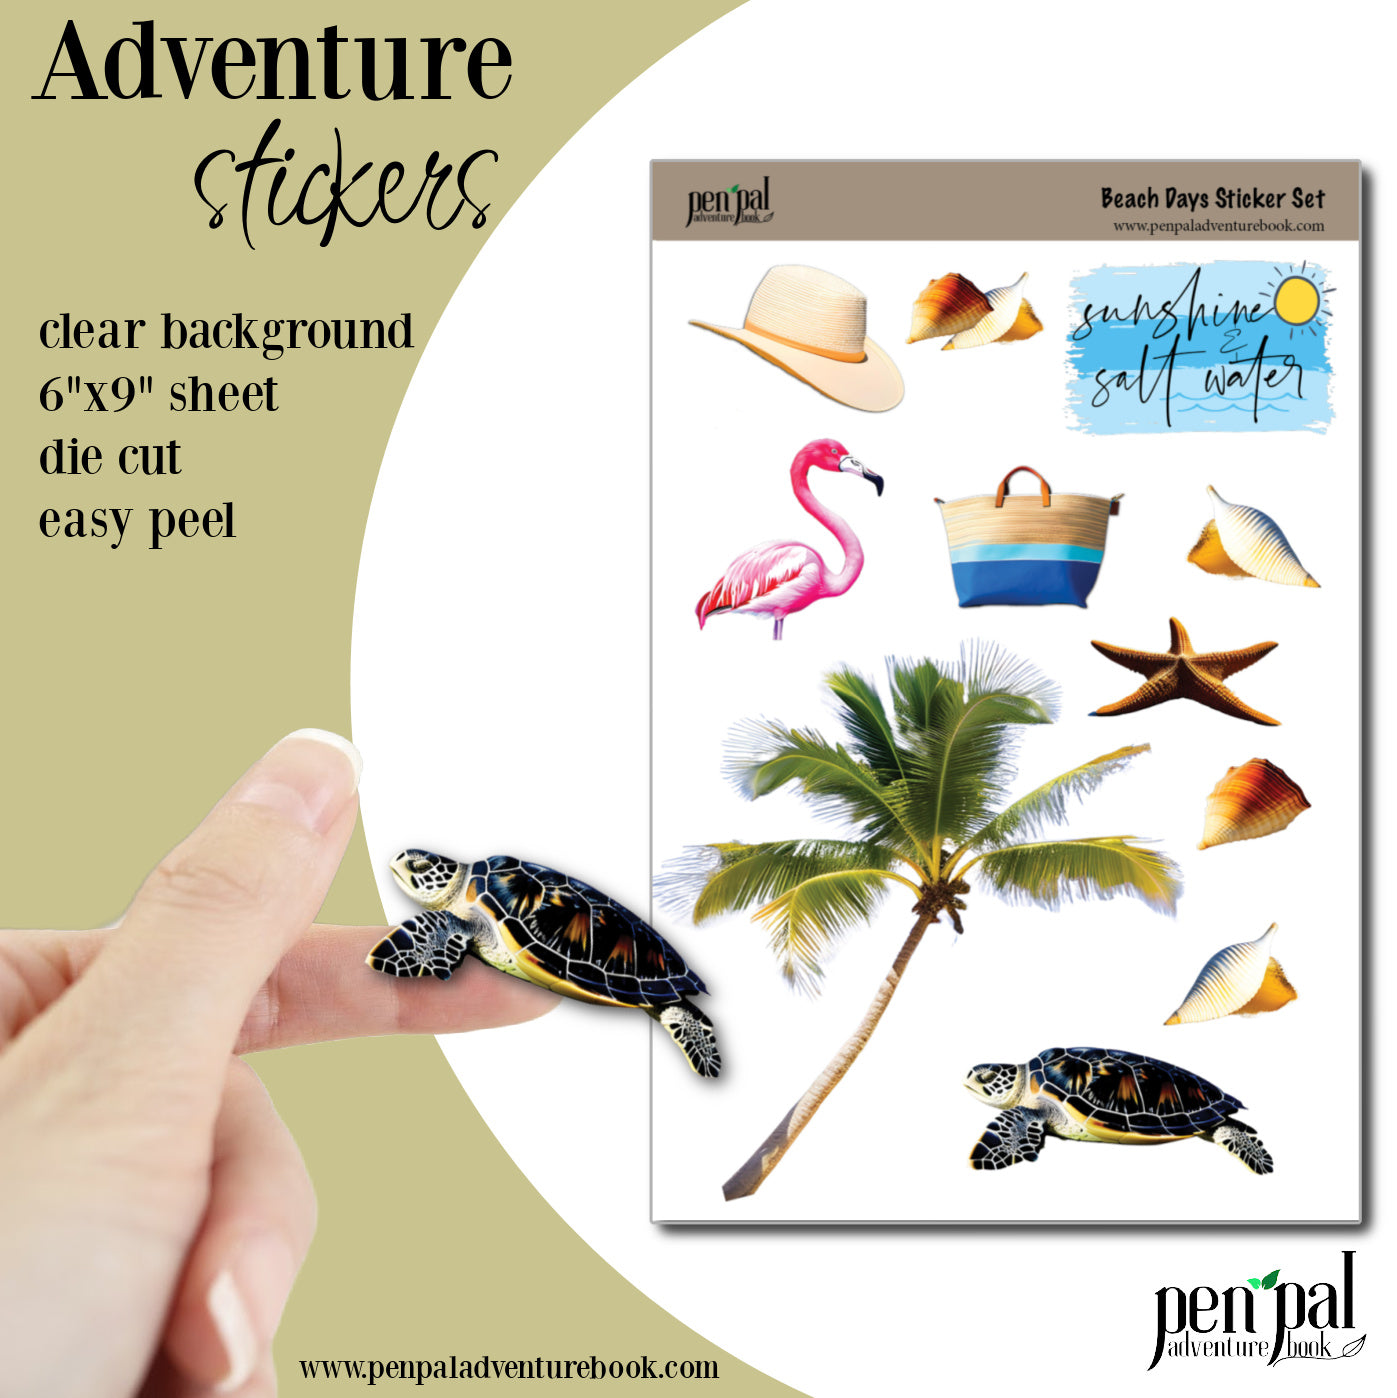 Sticker Sheet - Beach Vacation Collection - Sunshine & Salt Water Die Cut Sticker Sheet - Travel Stickers